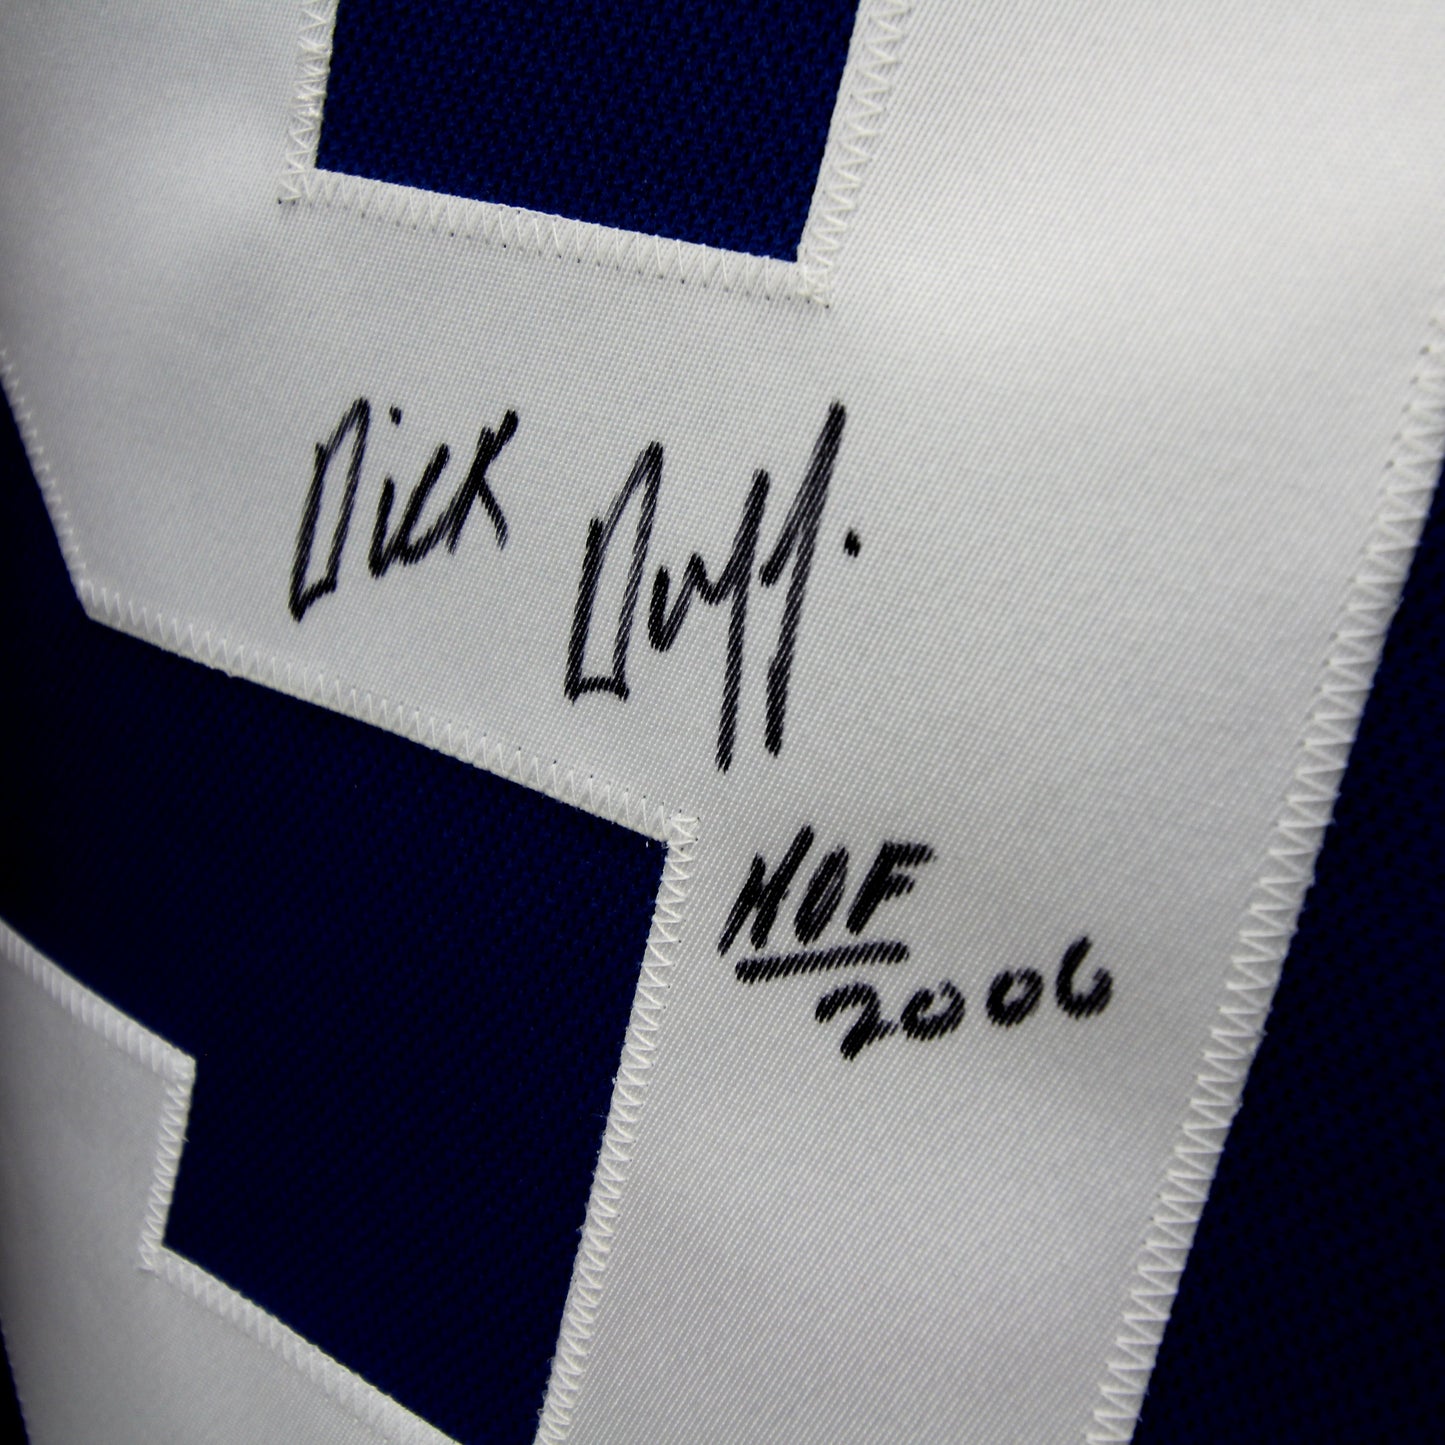 Dick Duff - Maple Leafs - Autographed Jersey / Chandail autographié